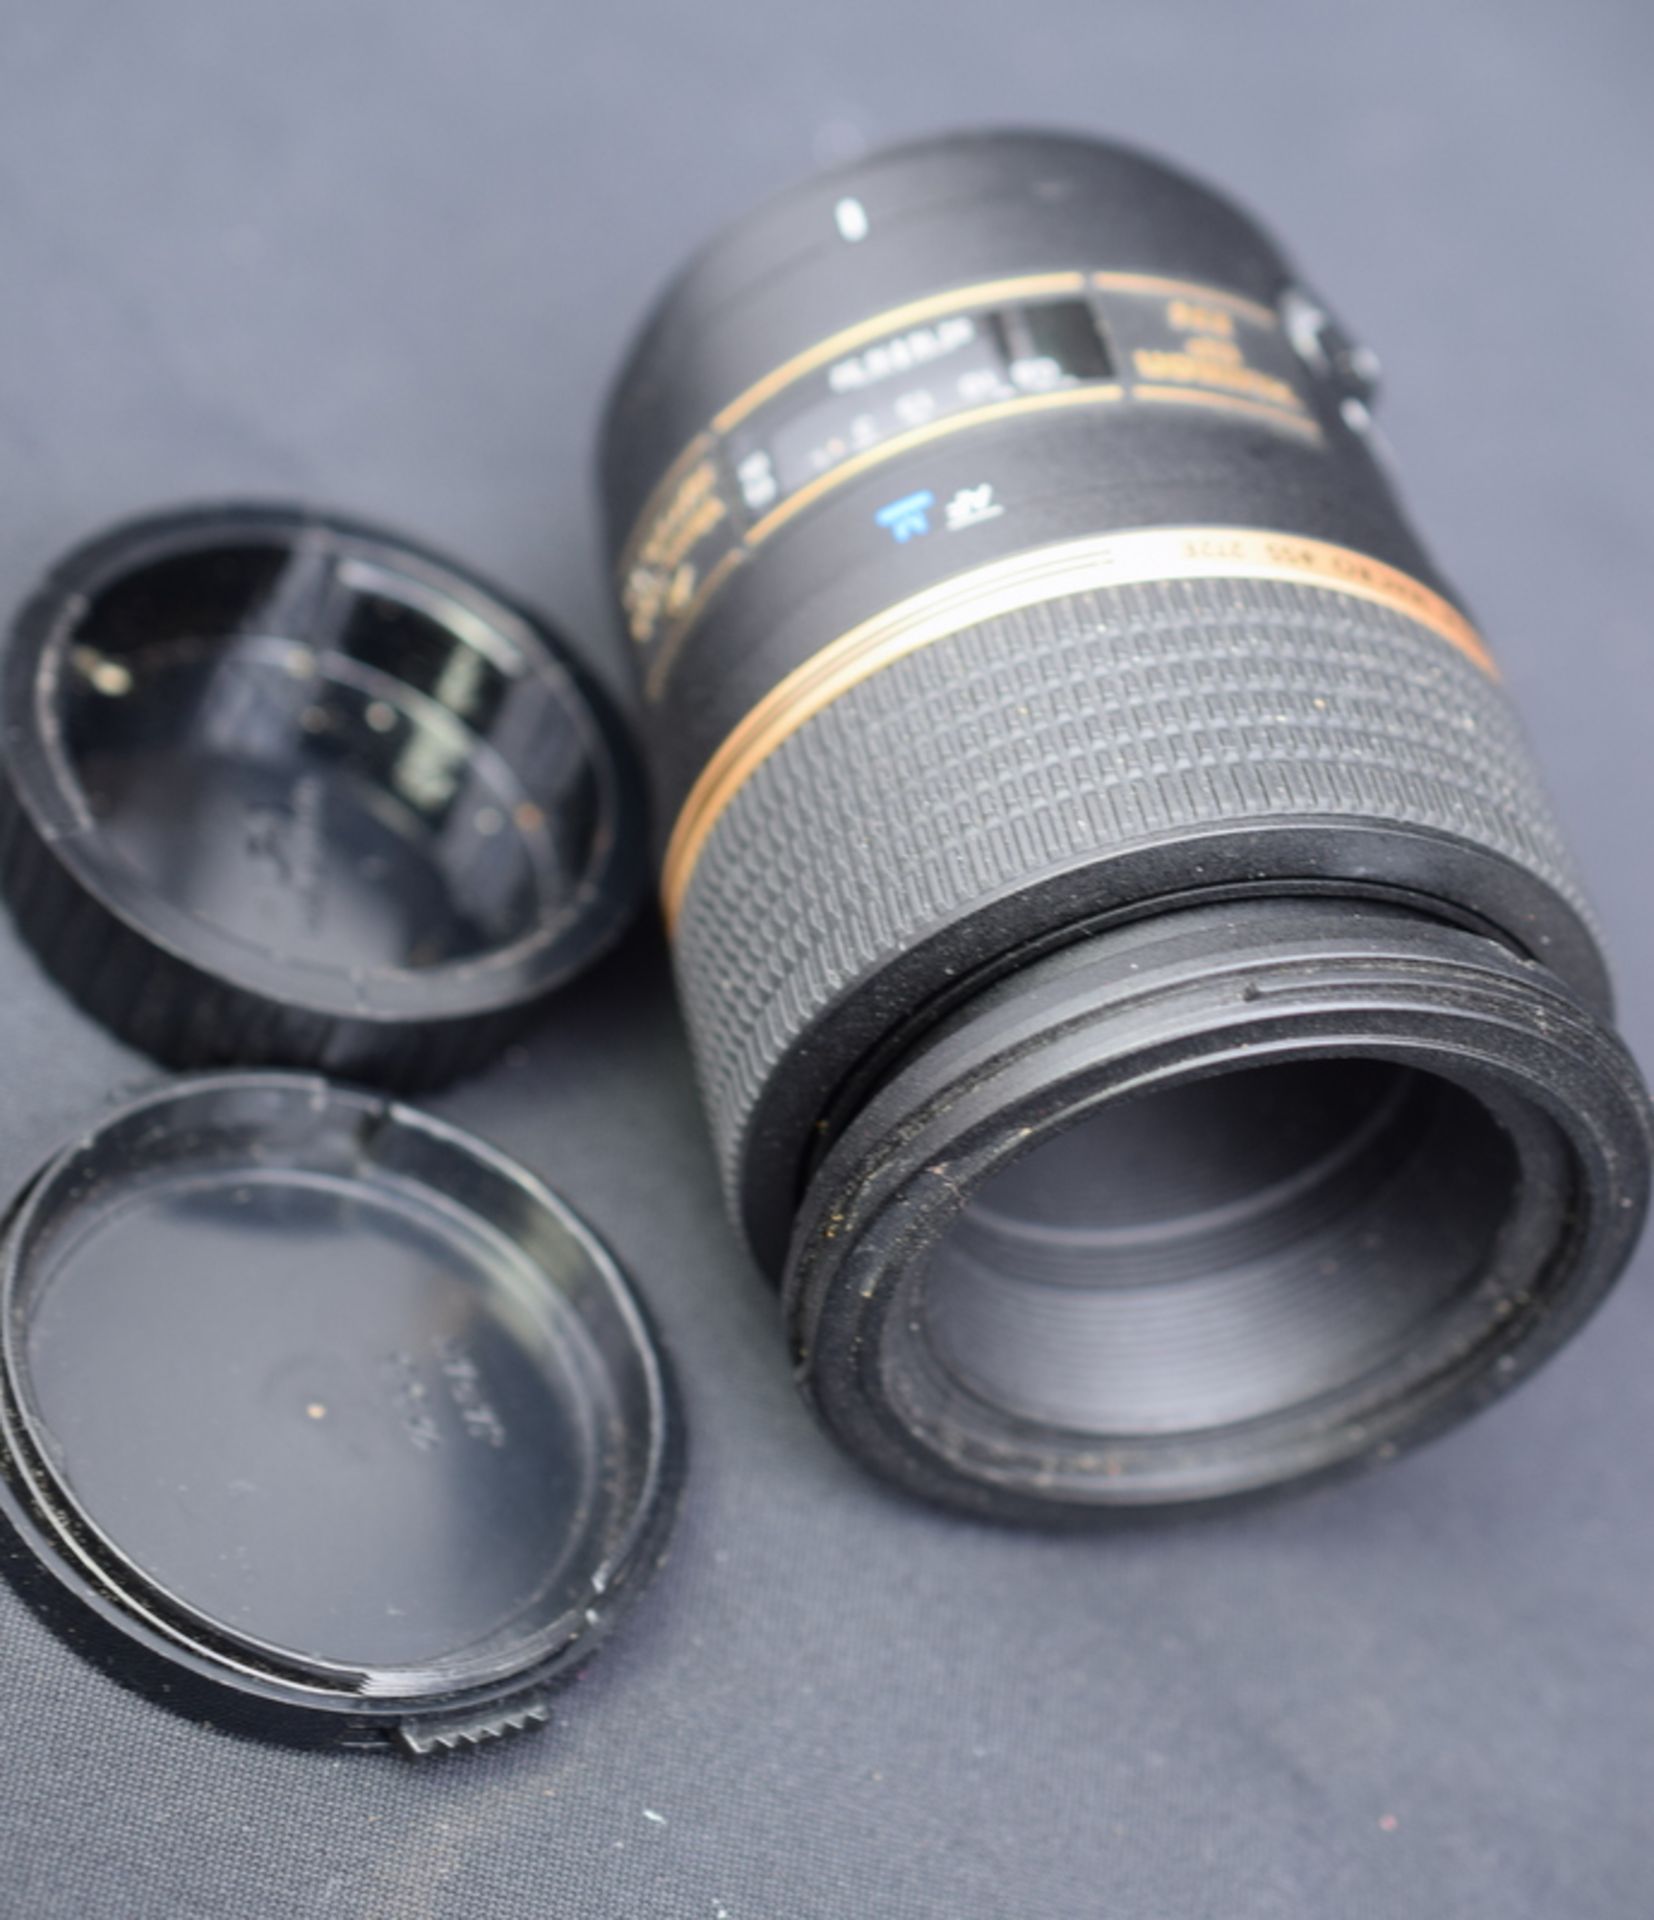 Tamron SP AF 90mm F/2.8 Di Macro 1:1 Lens - Nikon Fit - Image 2 of 5